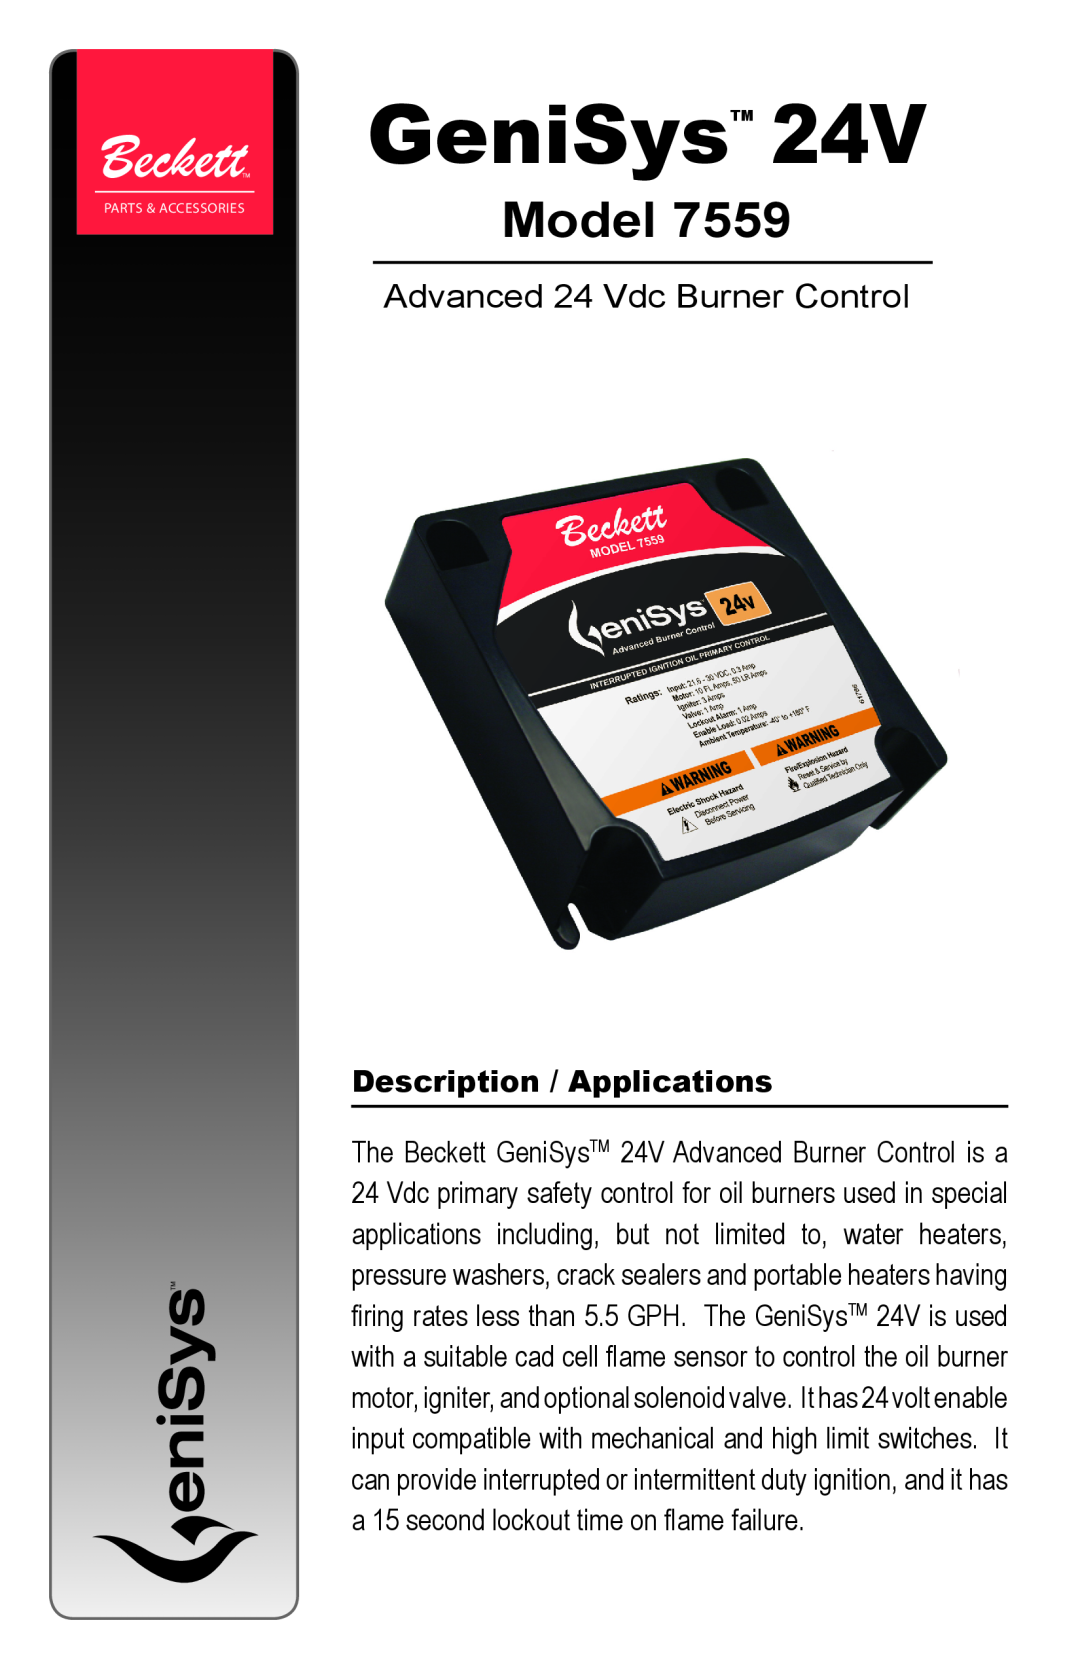 Beckett 7559 manual Description / Applications, GeniSys, Model, Advanced 24 Vdc Burner Control 